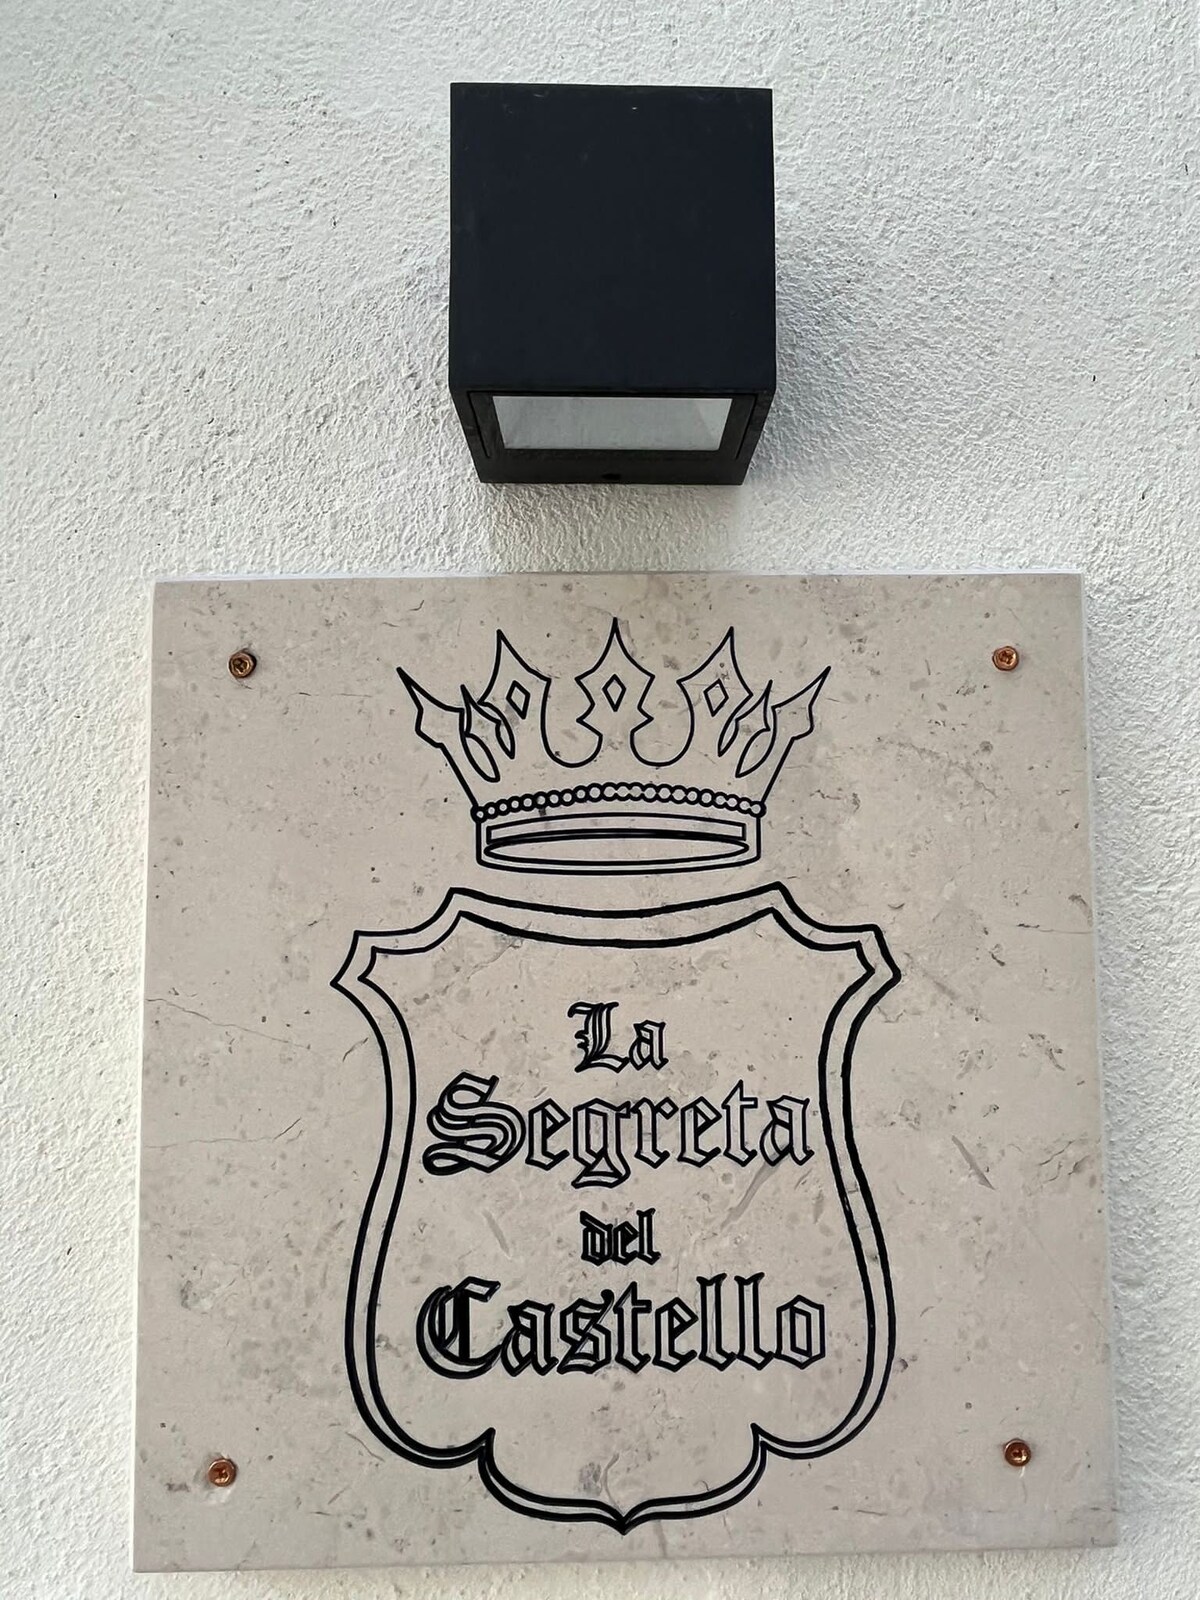 La Segreta del Castello
Selfceck-in private access